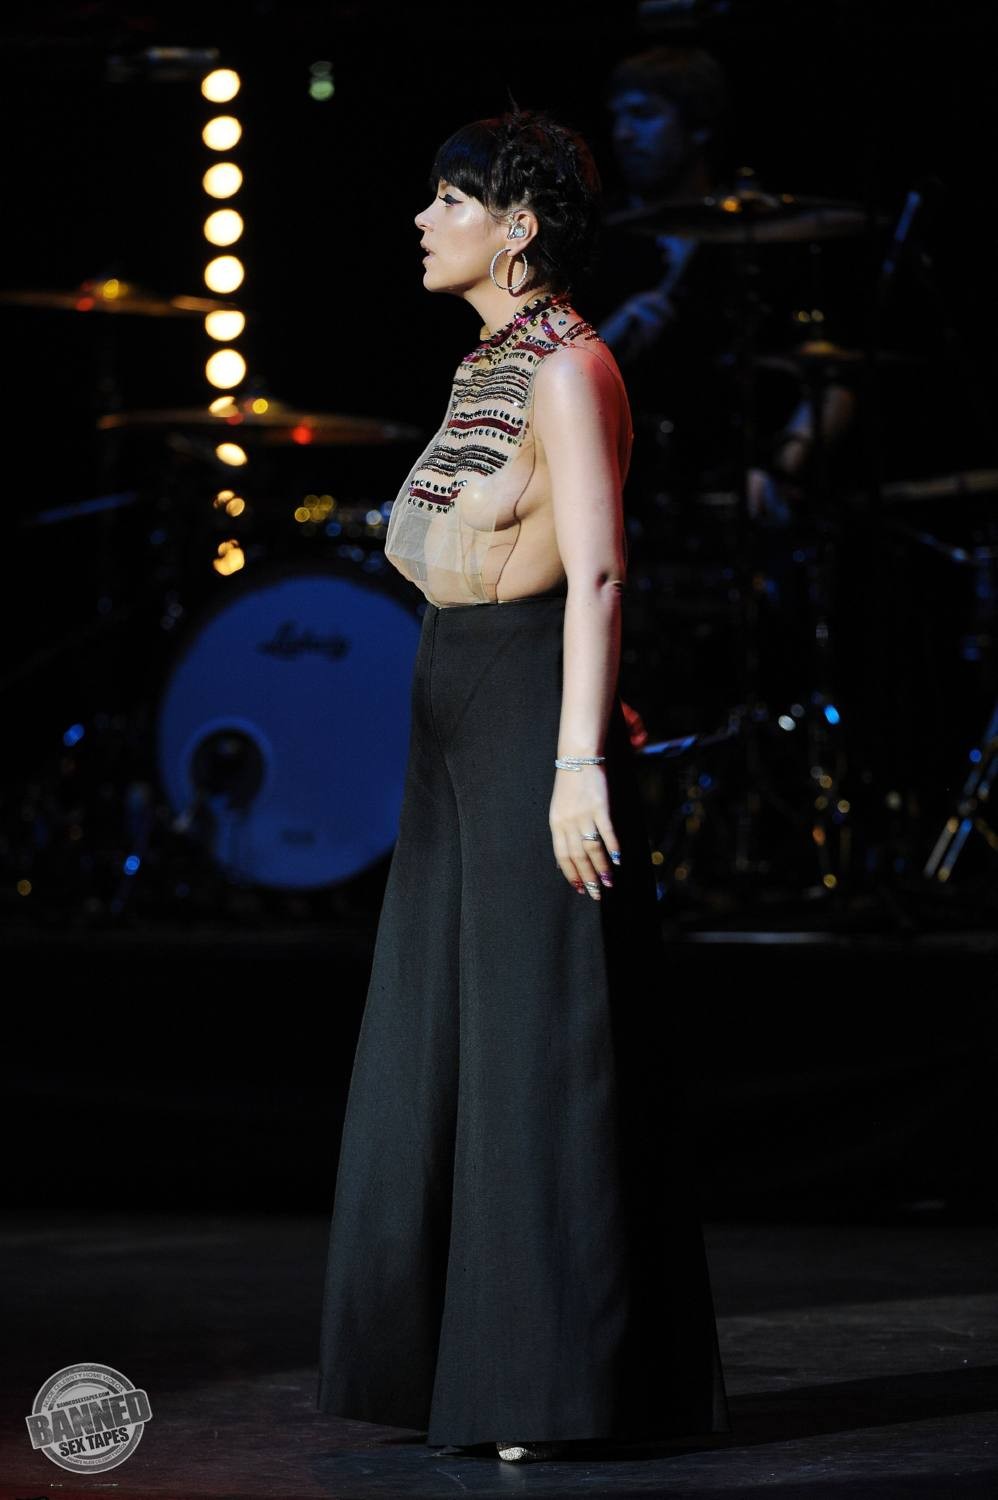 Lily allen montre ses seins nus à travers un haut transparent pendant un concert
 #75191575